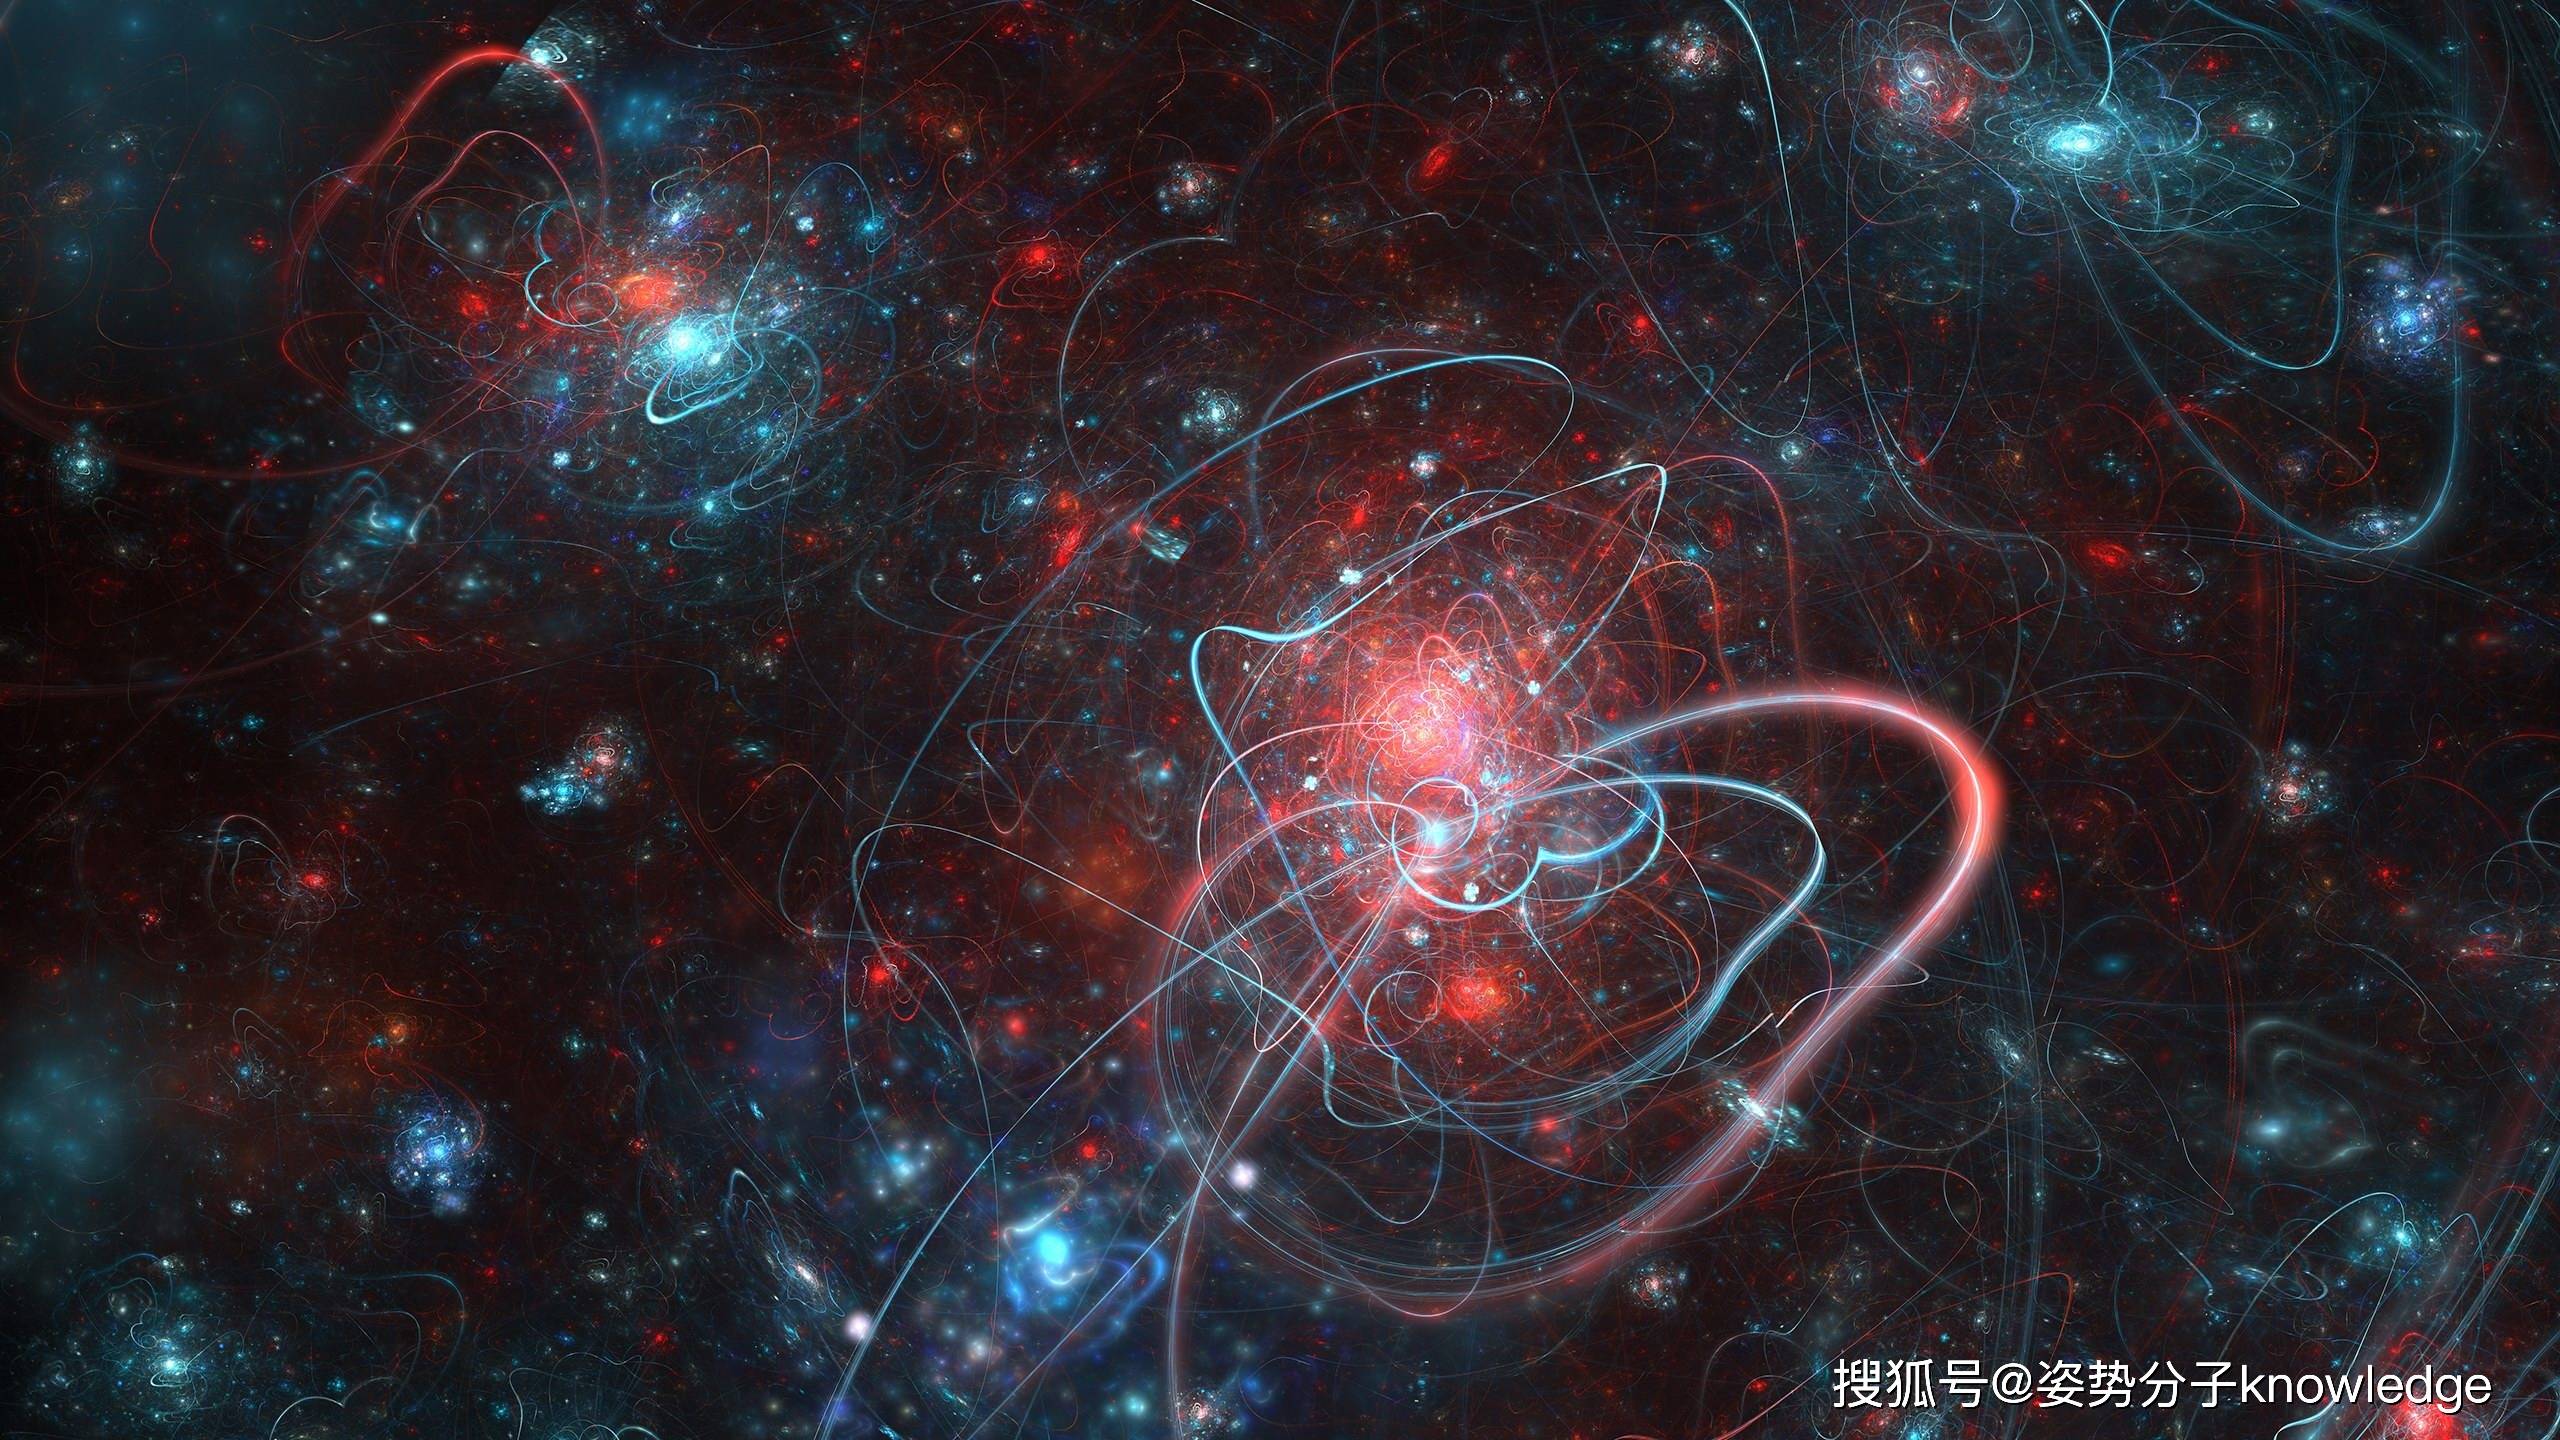 多重量子场产生暗能量,让宇宙"分崩离析"